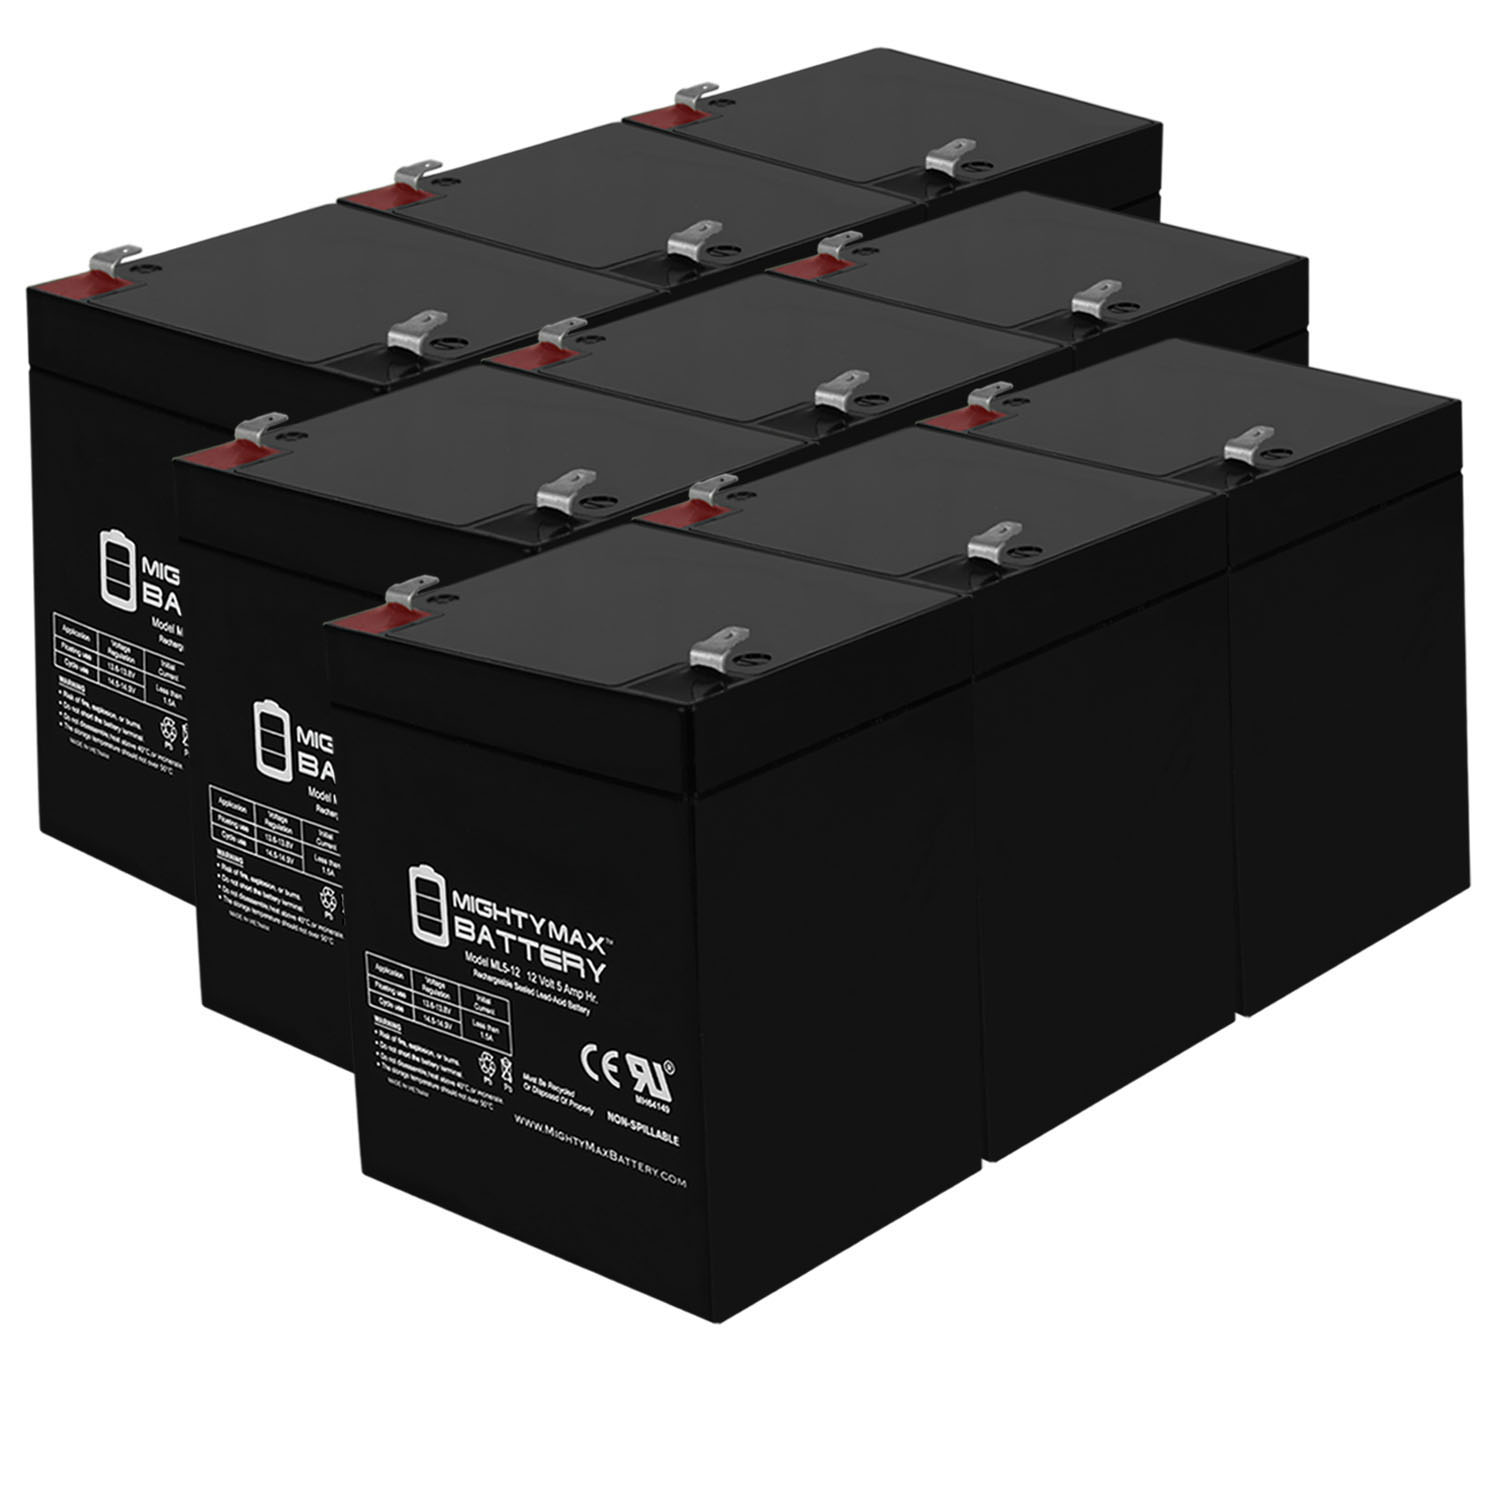 12V 5AH SLA Replacement Battery for Eagle Picher CF-12V5 - 9 Pack